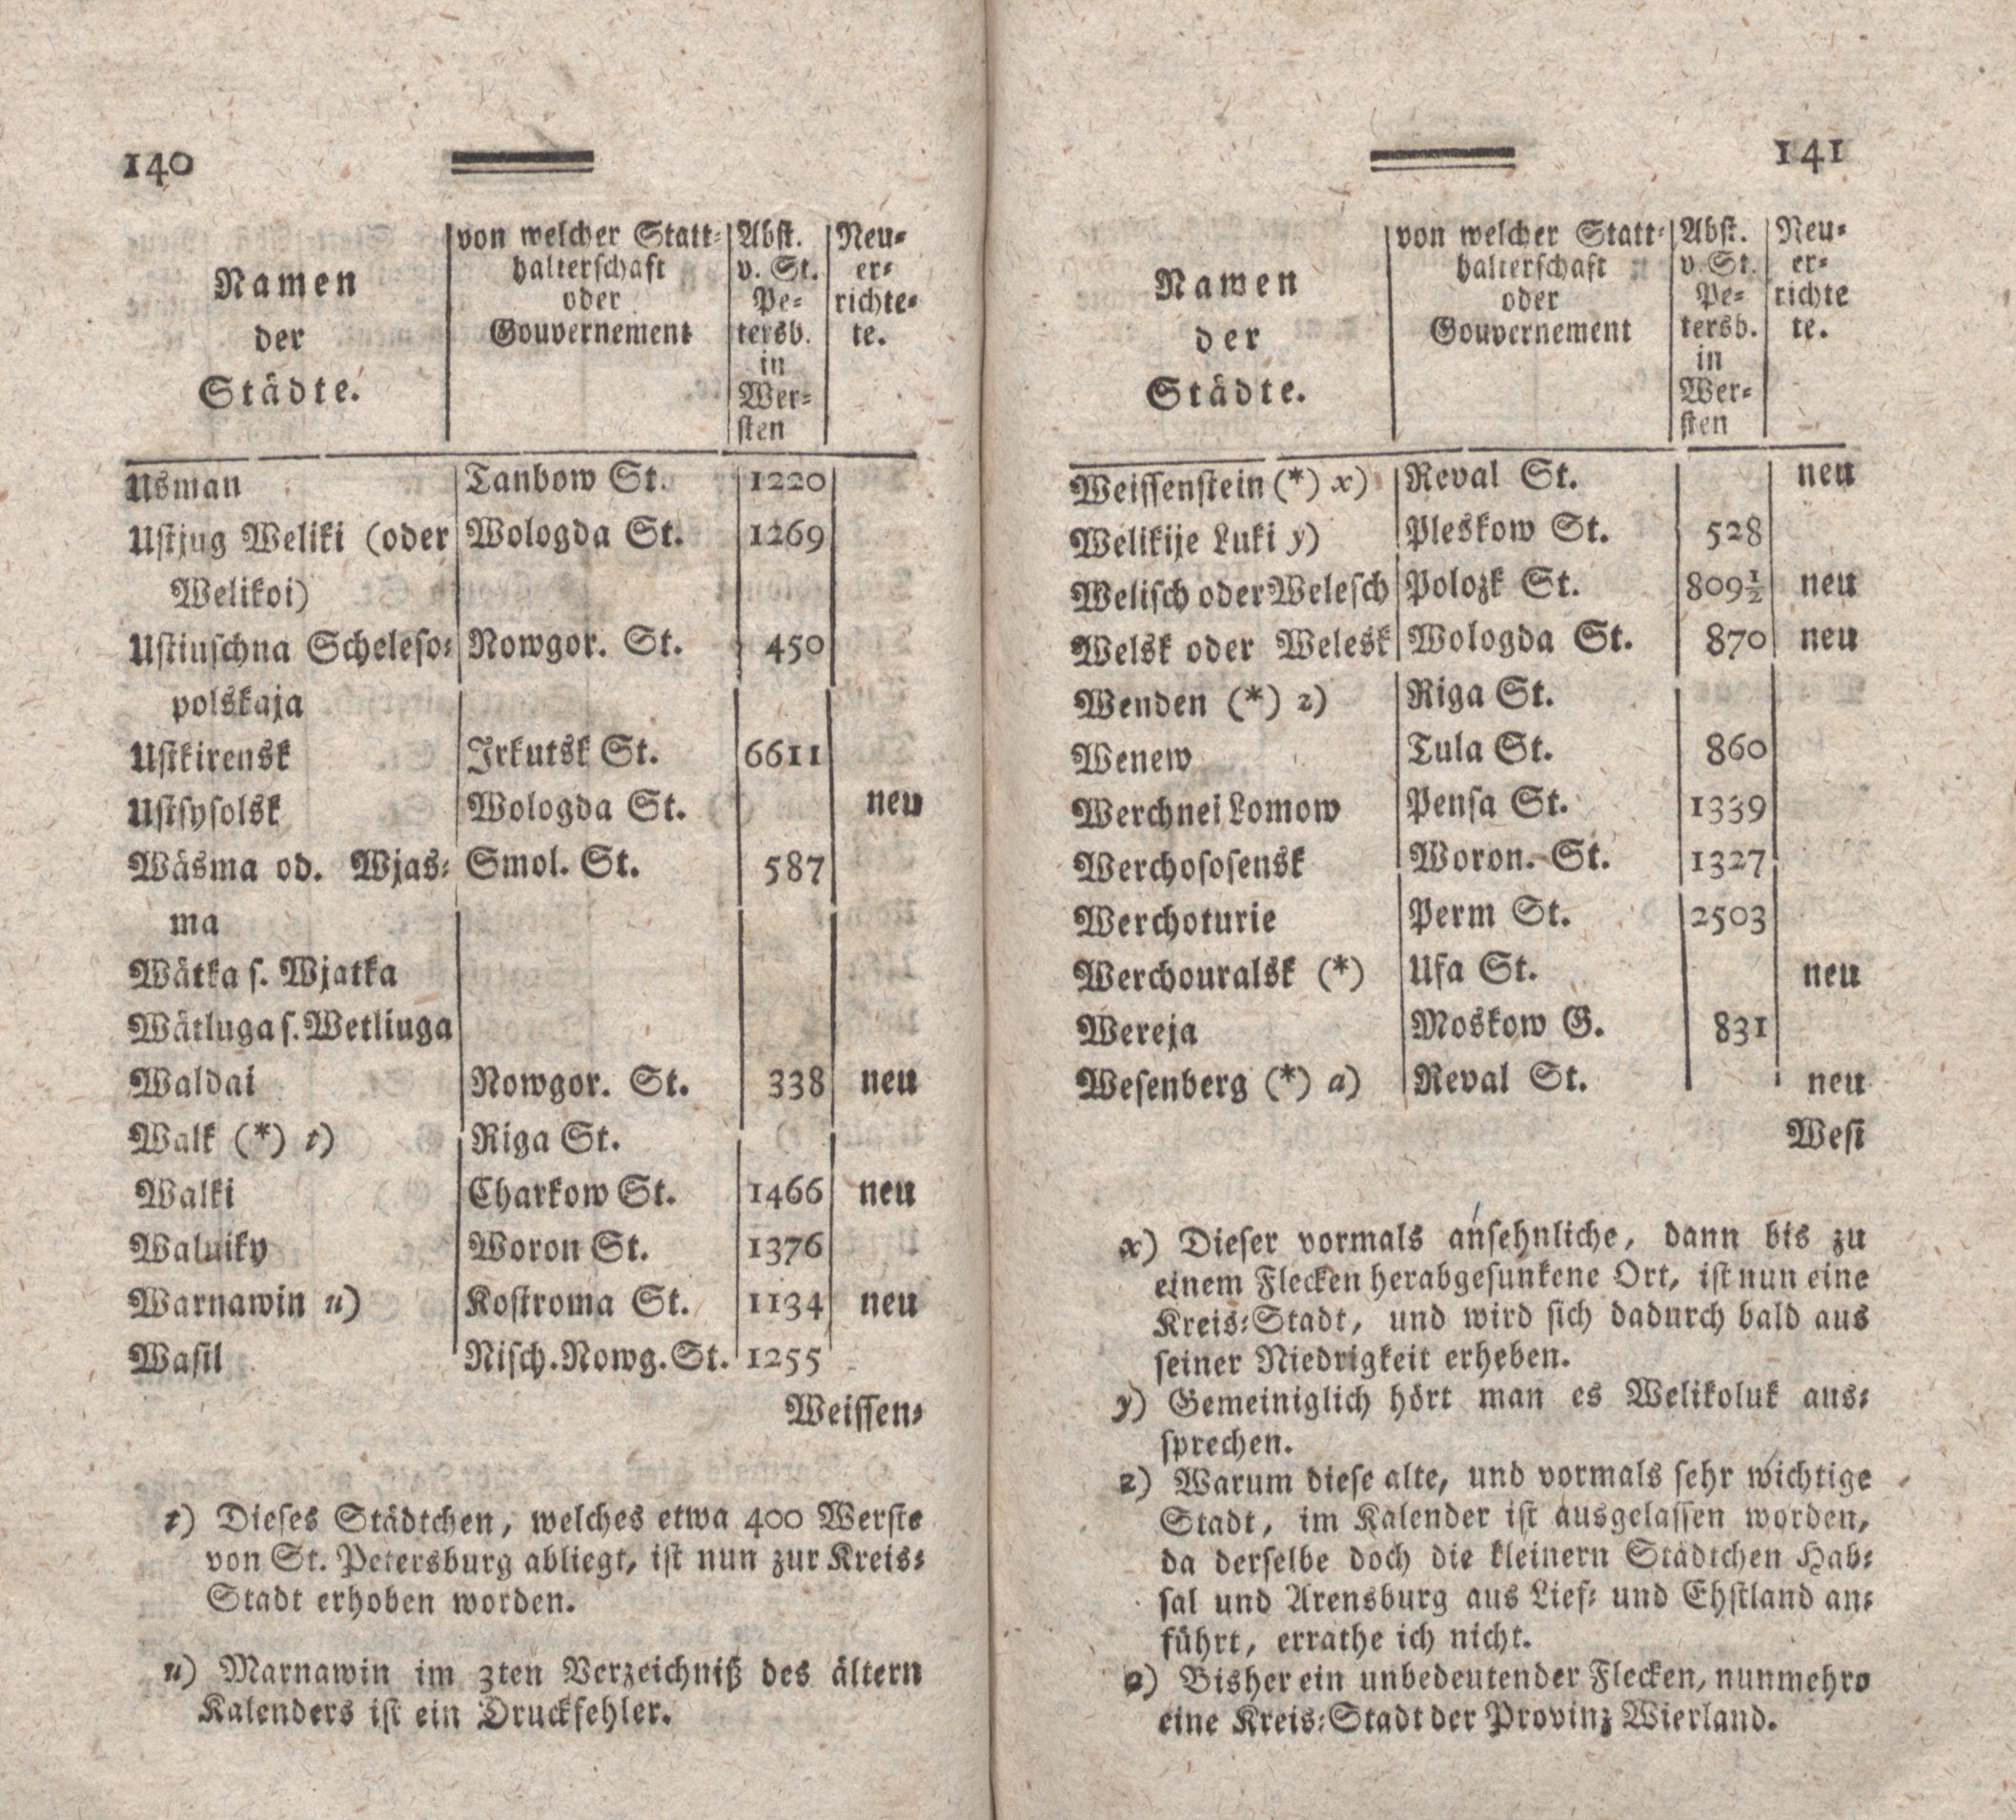 Nordische Miscellaneen [08] (1784) | 71. (140-141) Main body of text